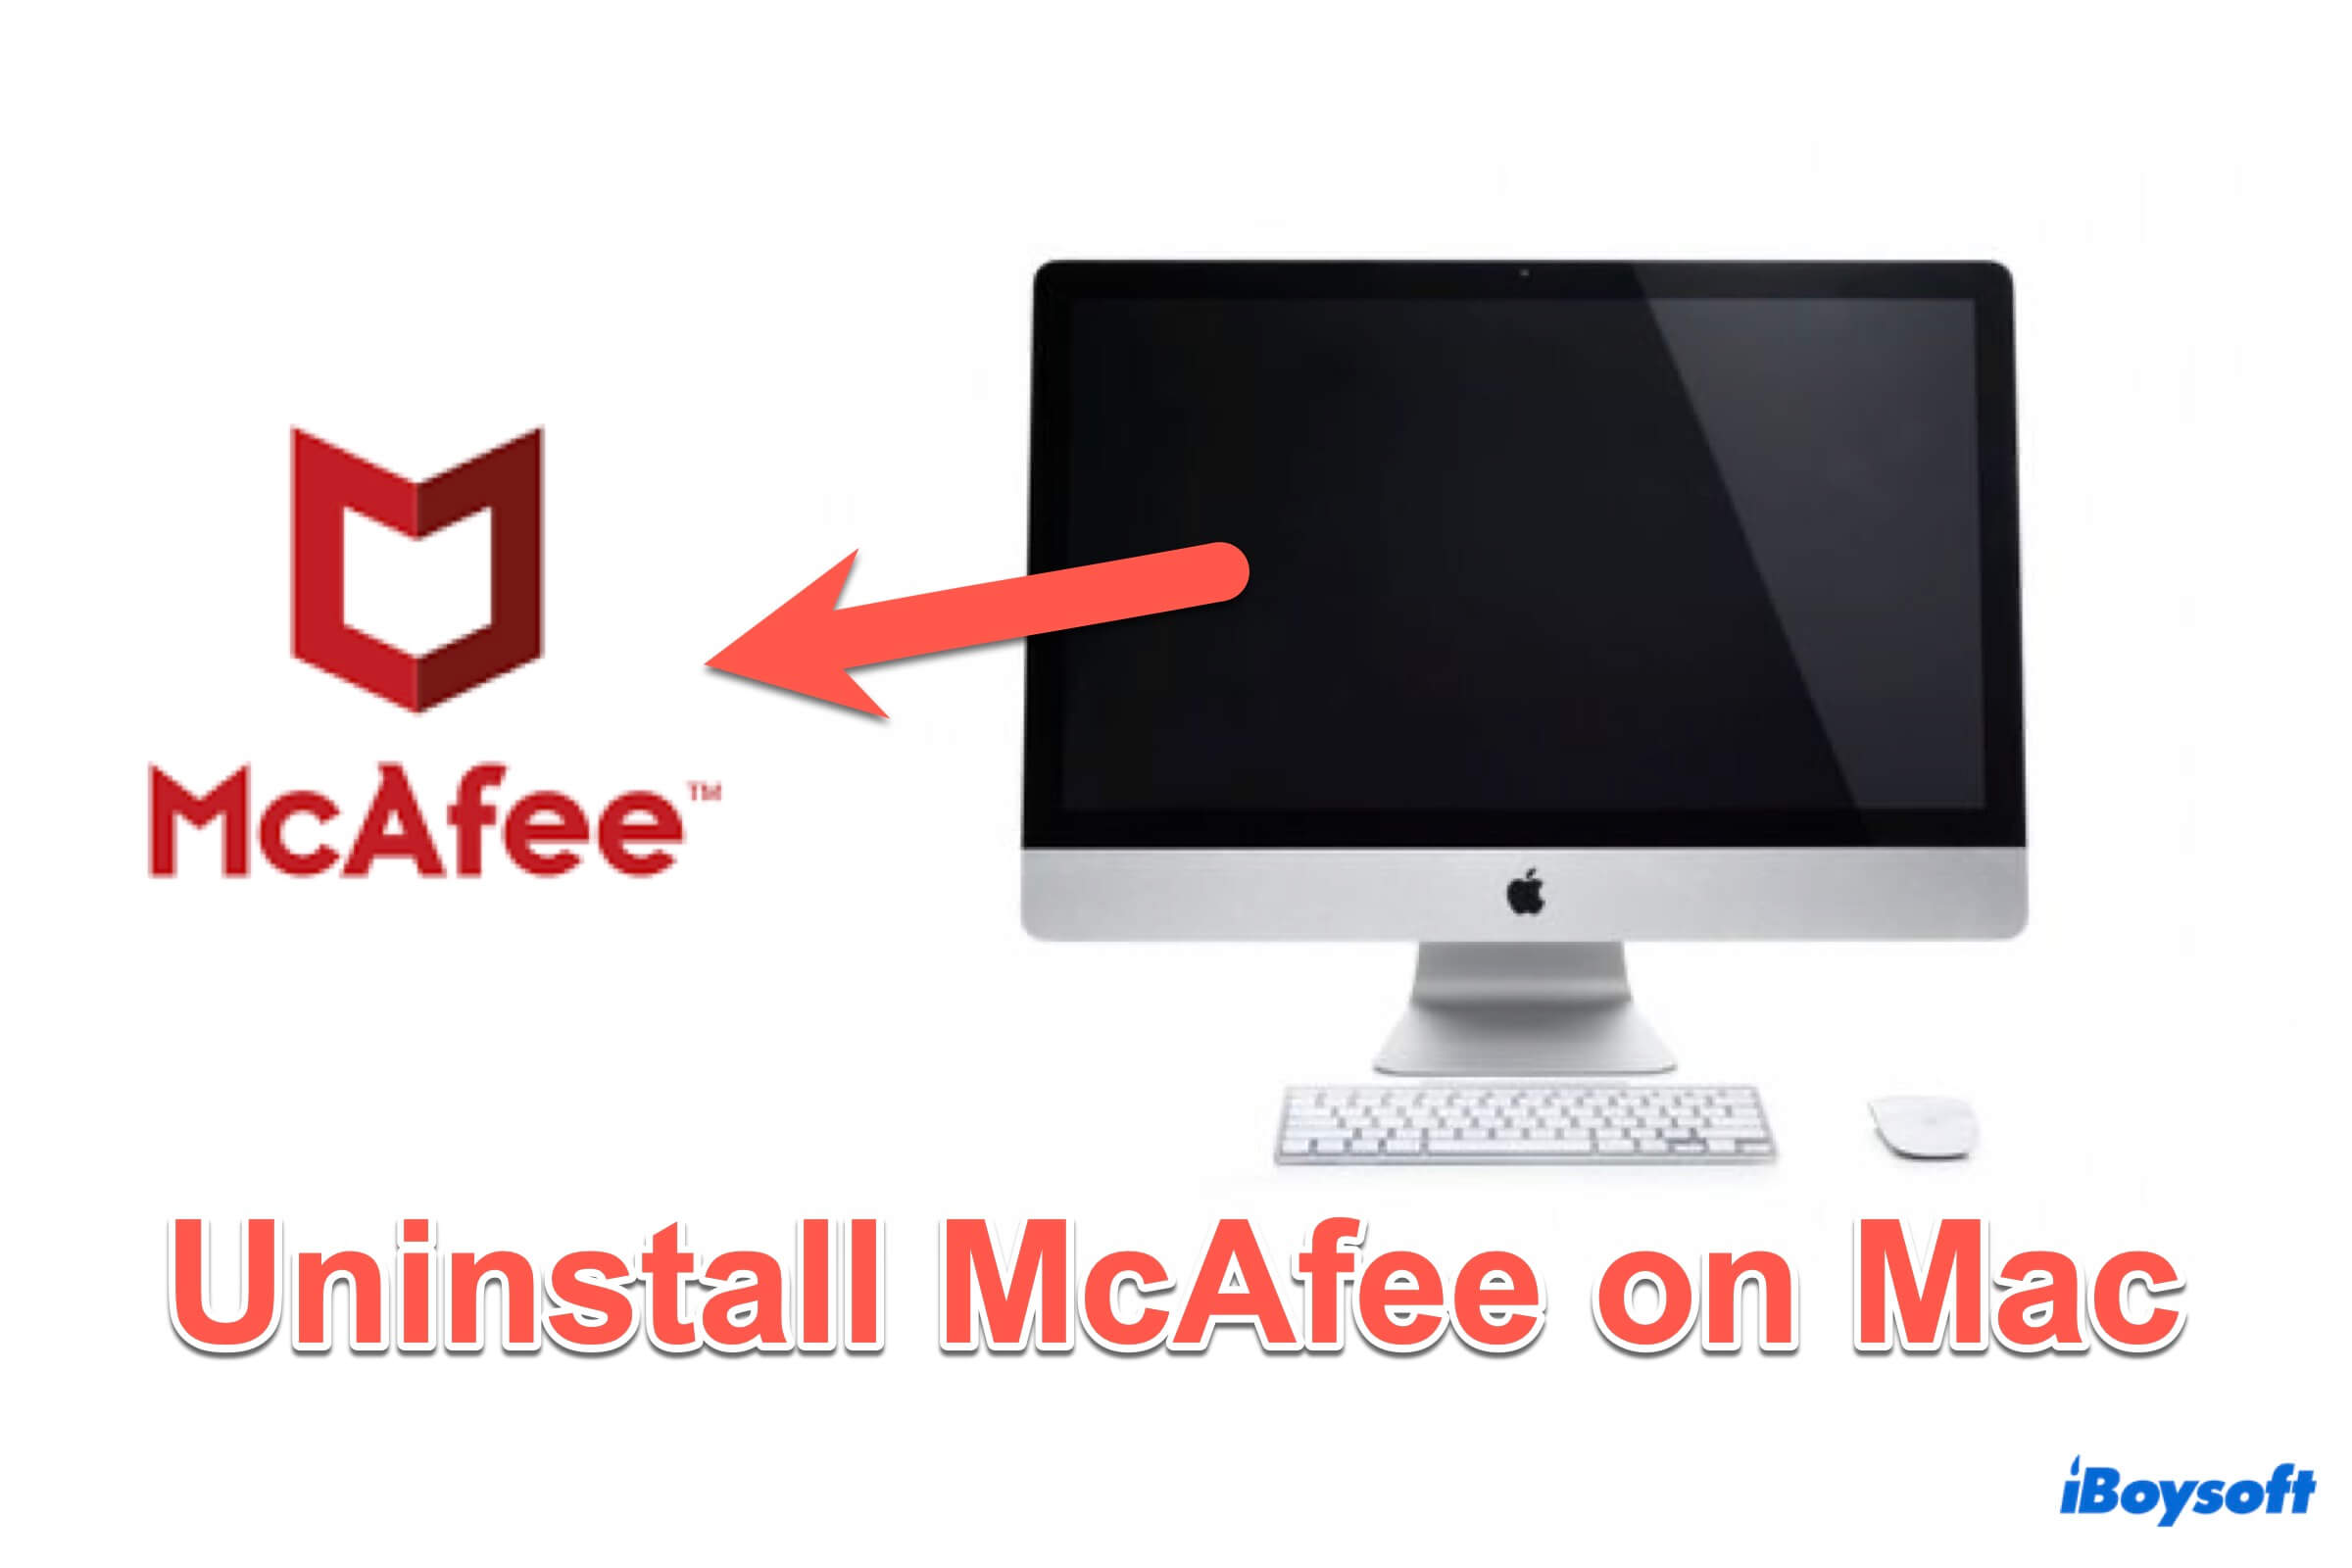 Résumé de la désinstallation de McAfee sur Mac